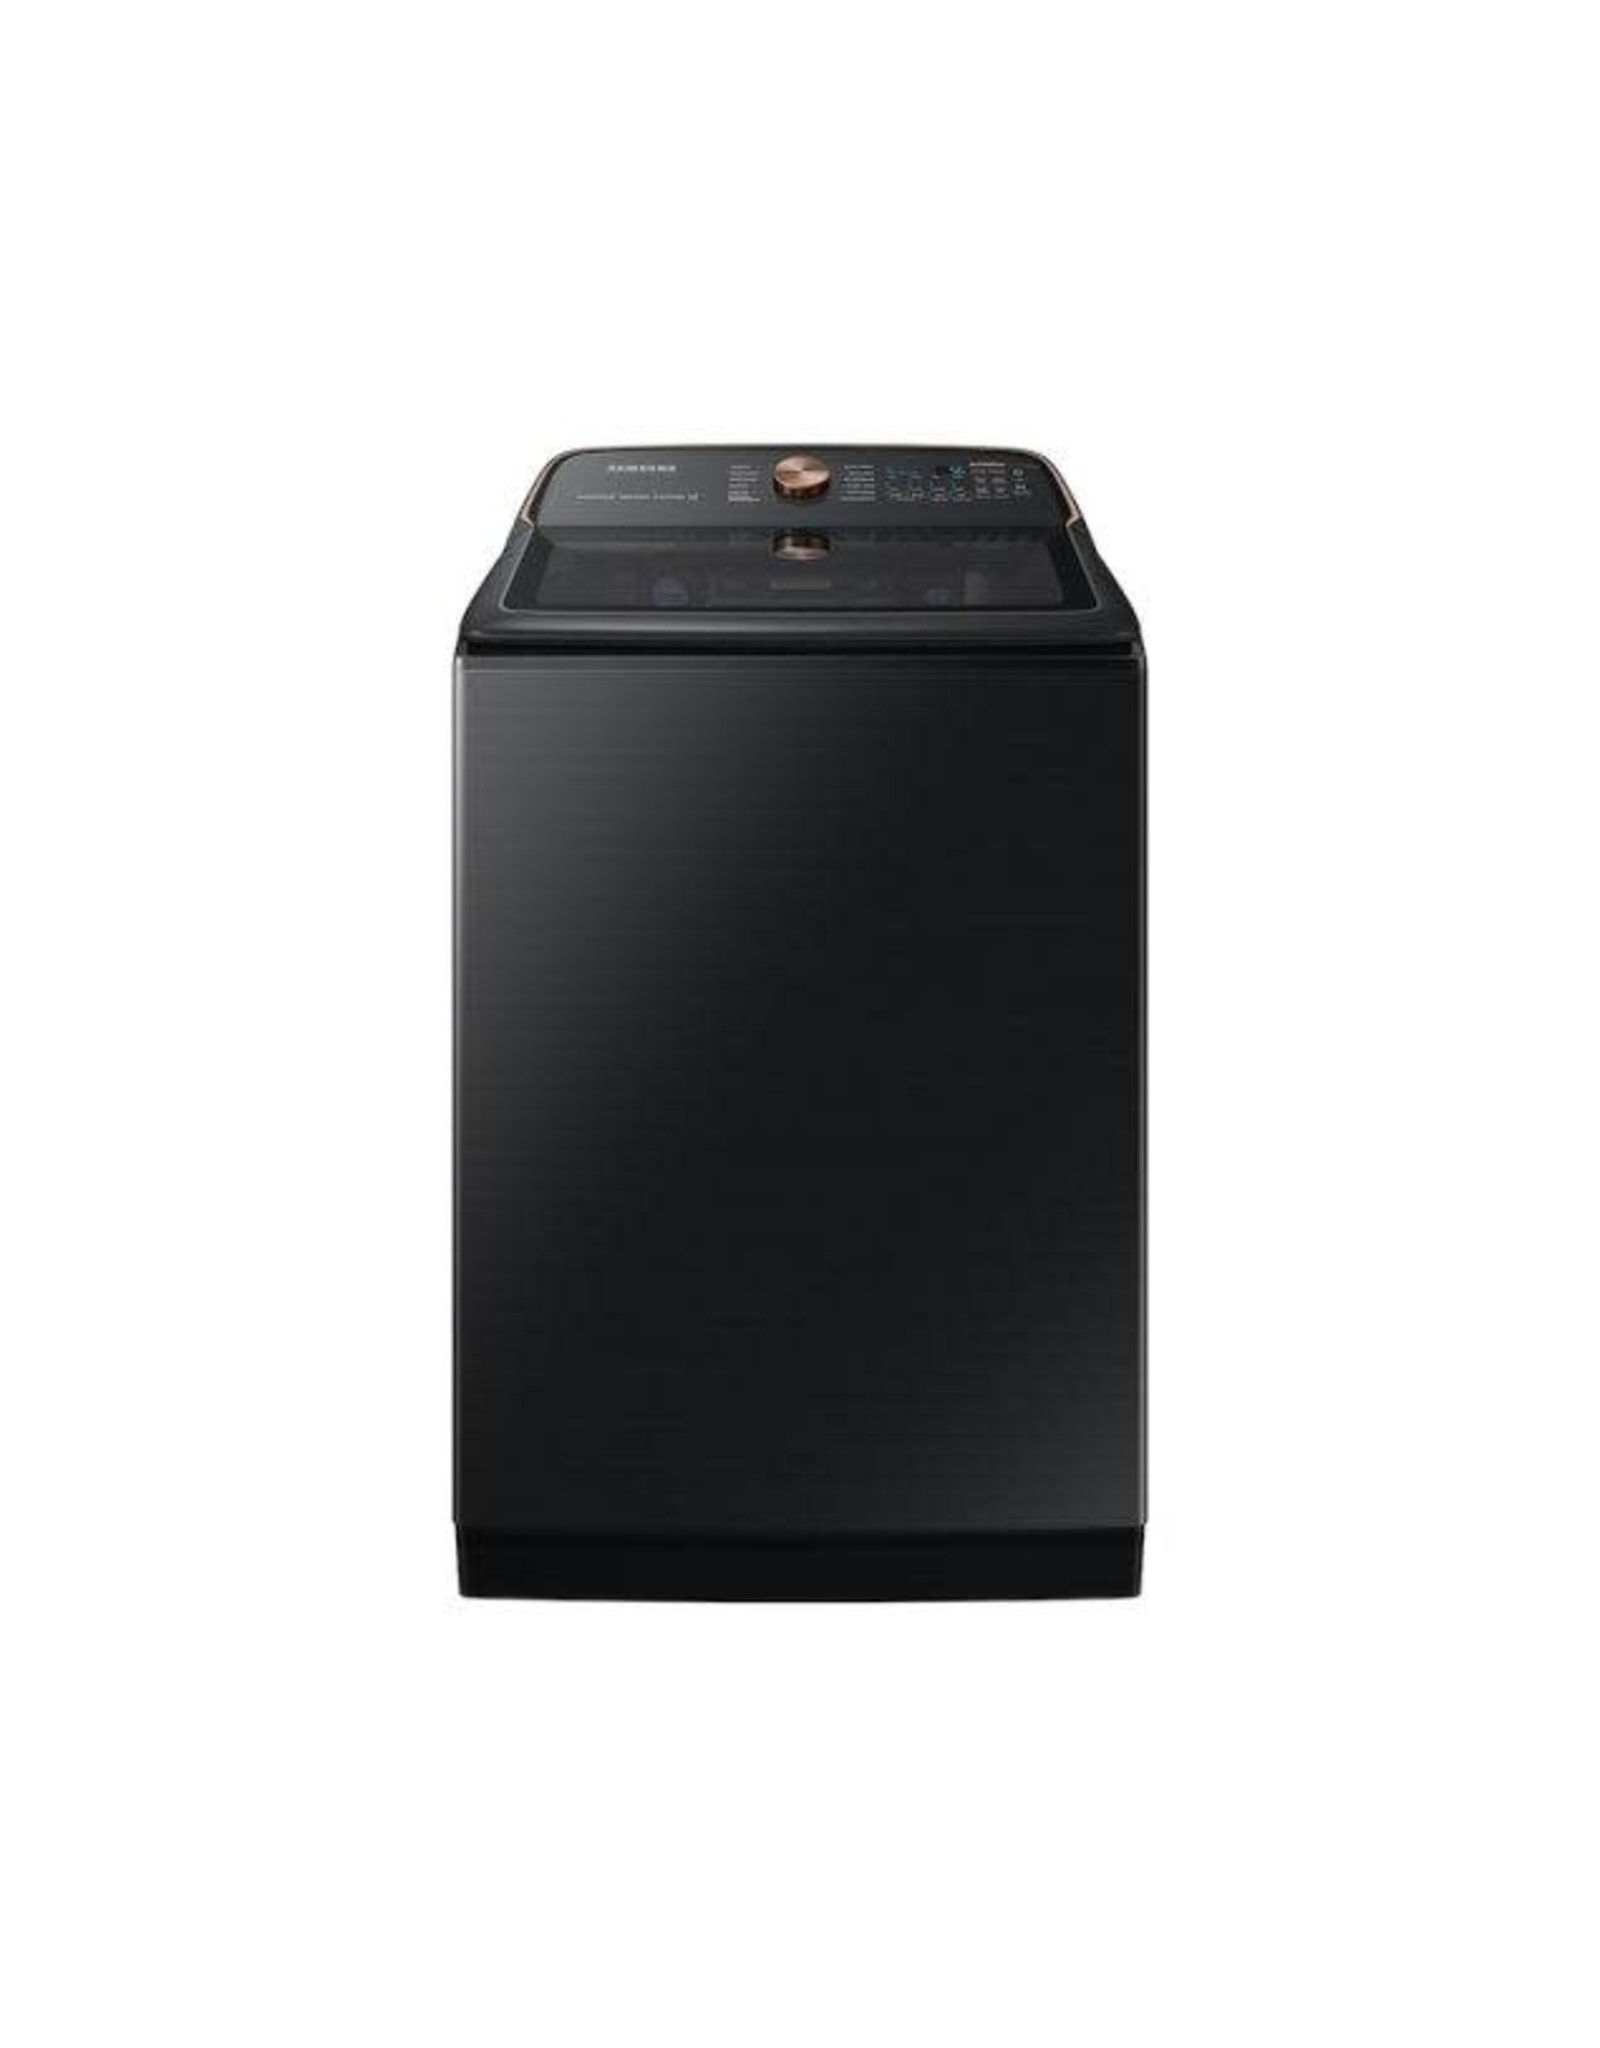 DVE55A7700V 7.4 cu. ft. Smart Brushed Black Electric Dryer with Steam Sanitize